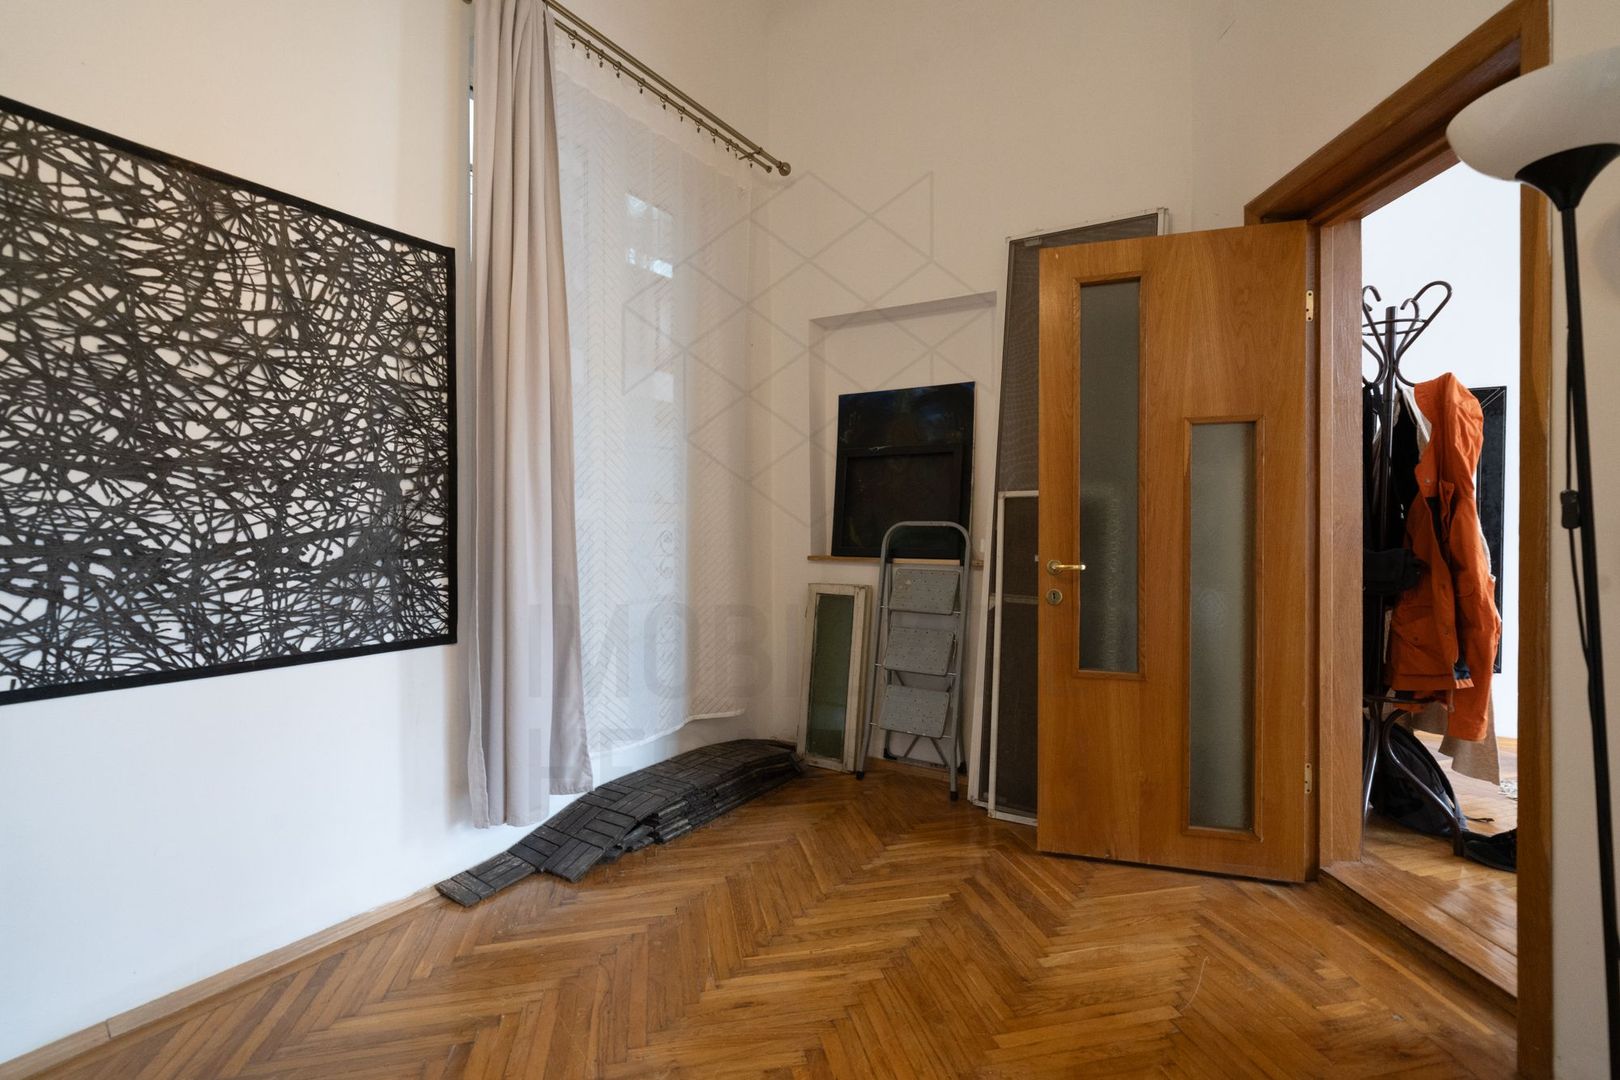 Victoriei | Buzesti | Apartament in casa renovata